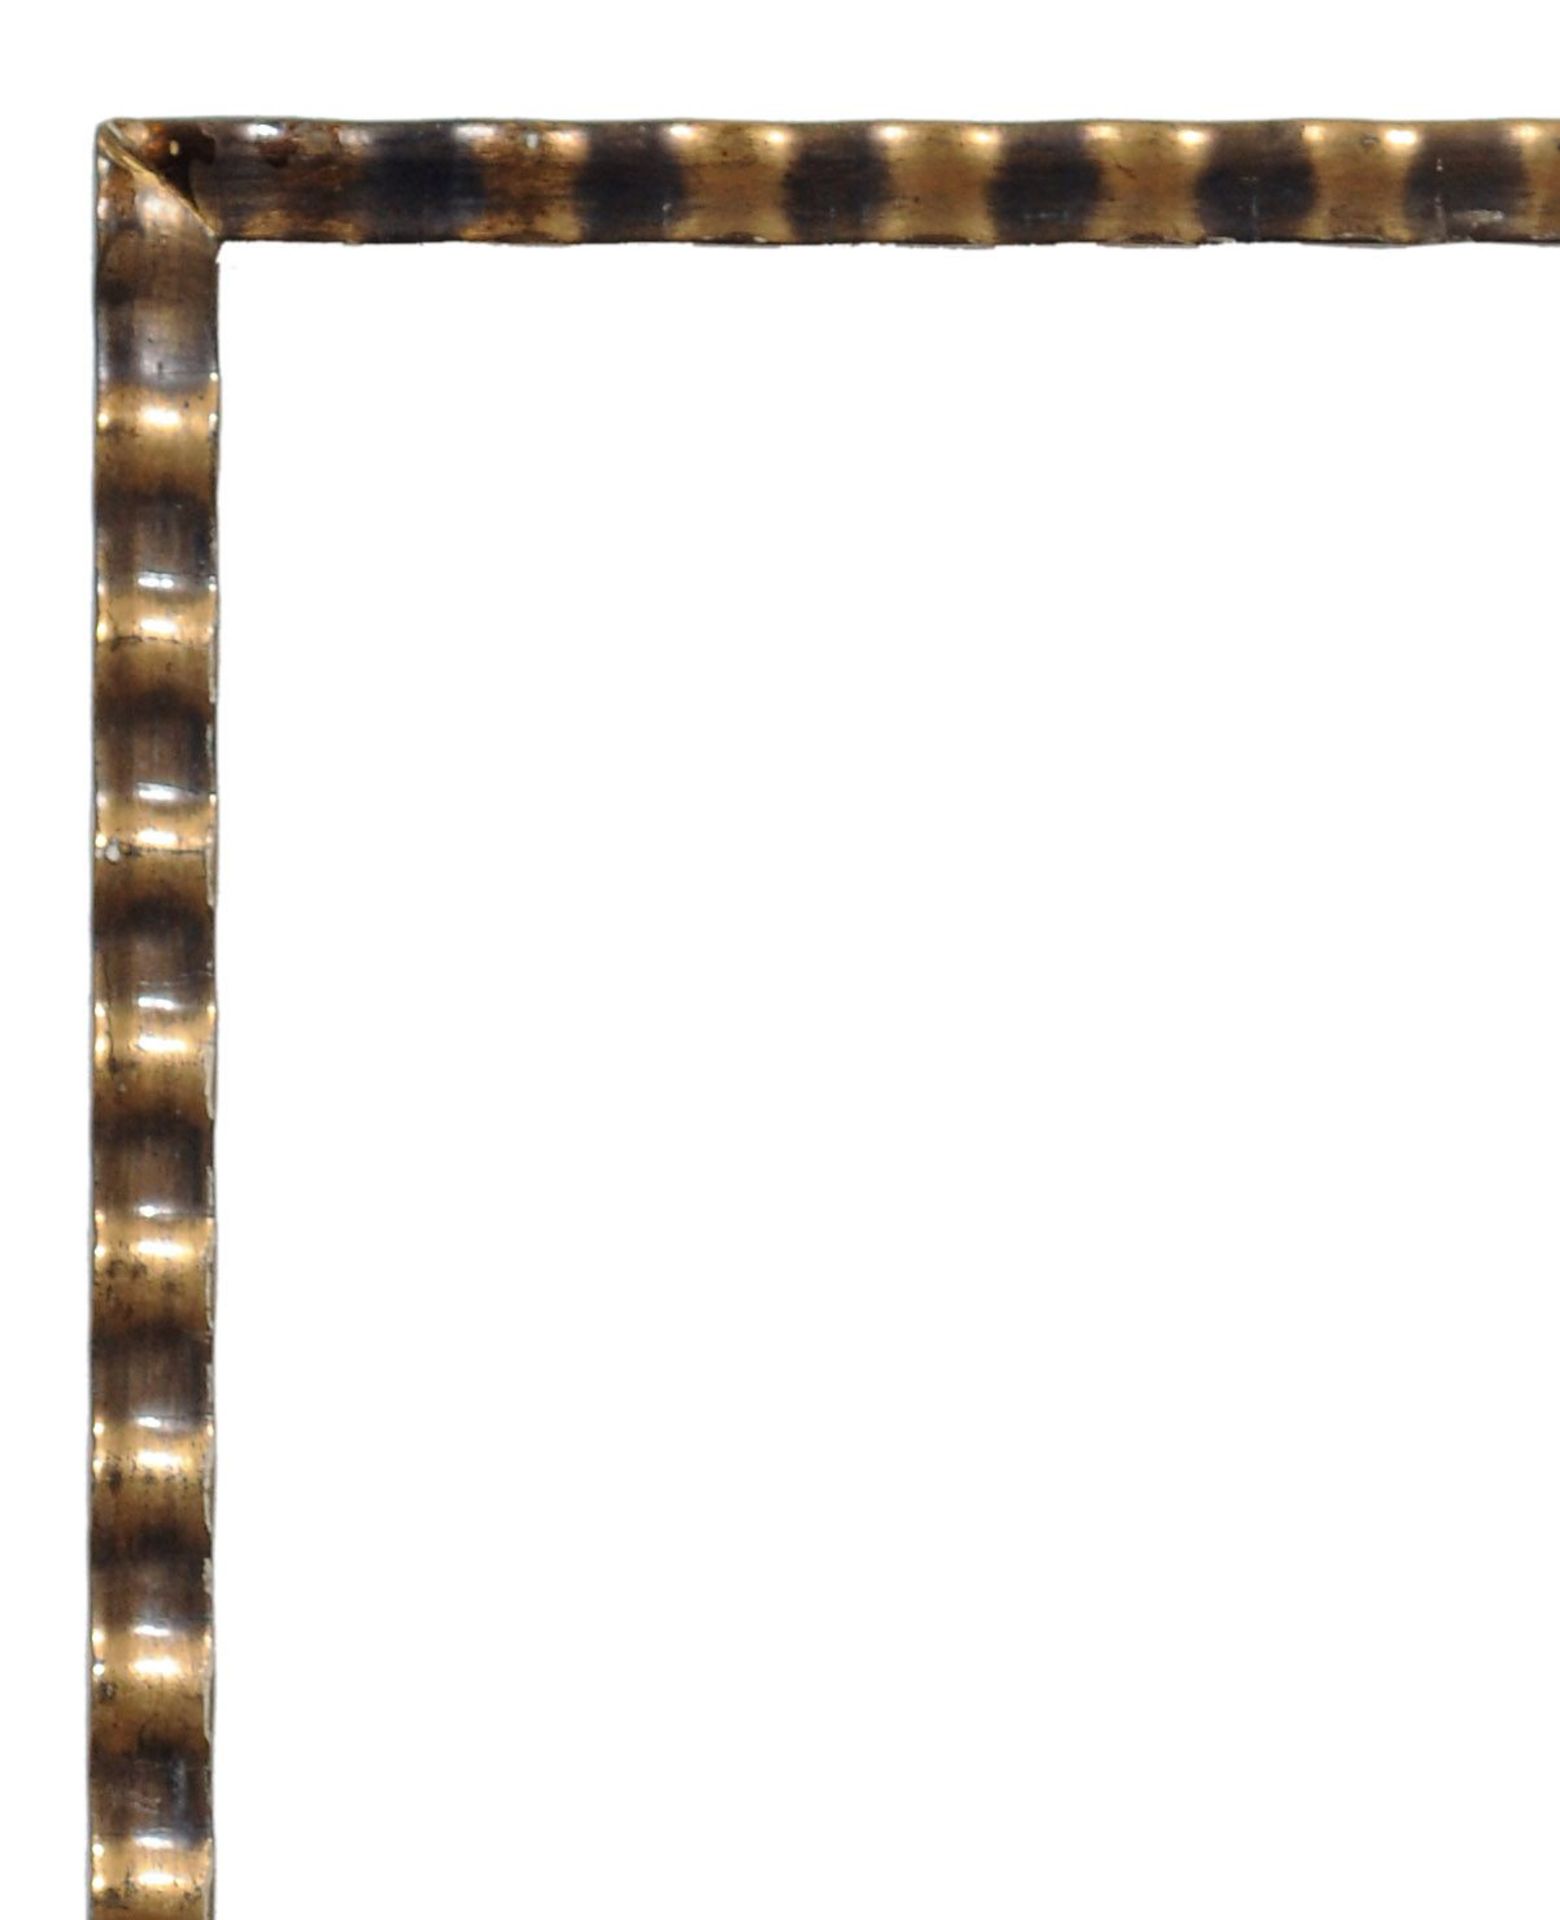 Kleiner Wellenleistenrahmen. 19. Jh./20. Jh. Holz, masseverziert und mit goldfarbenem, teils - Bild 2 aus 2